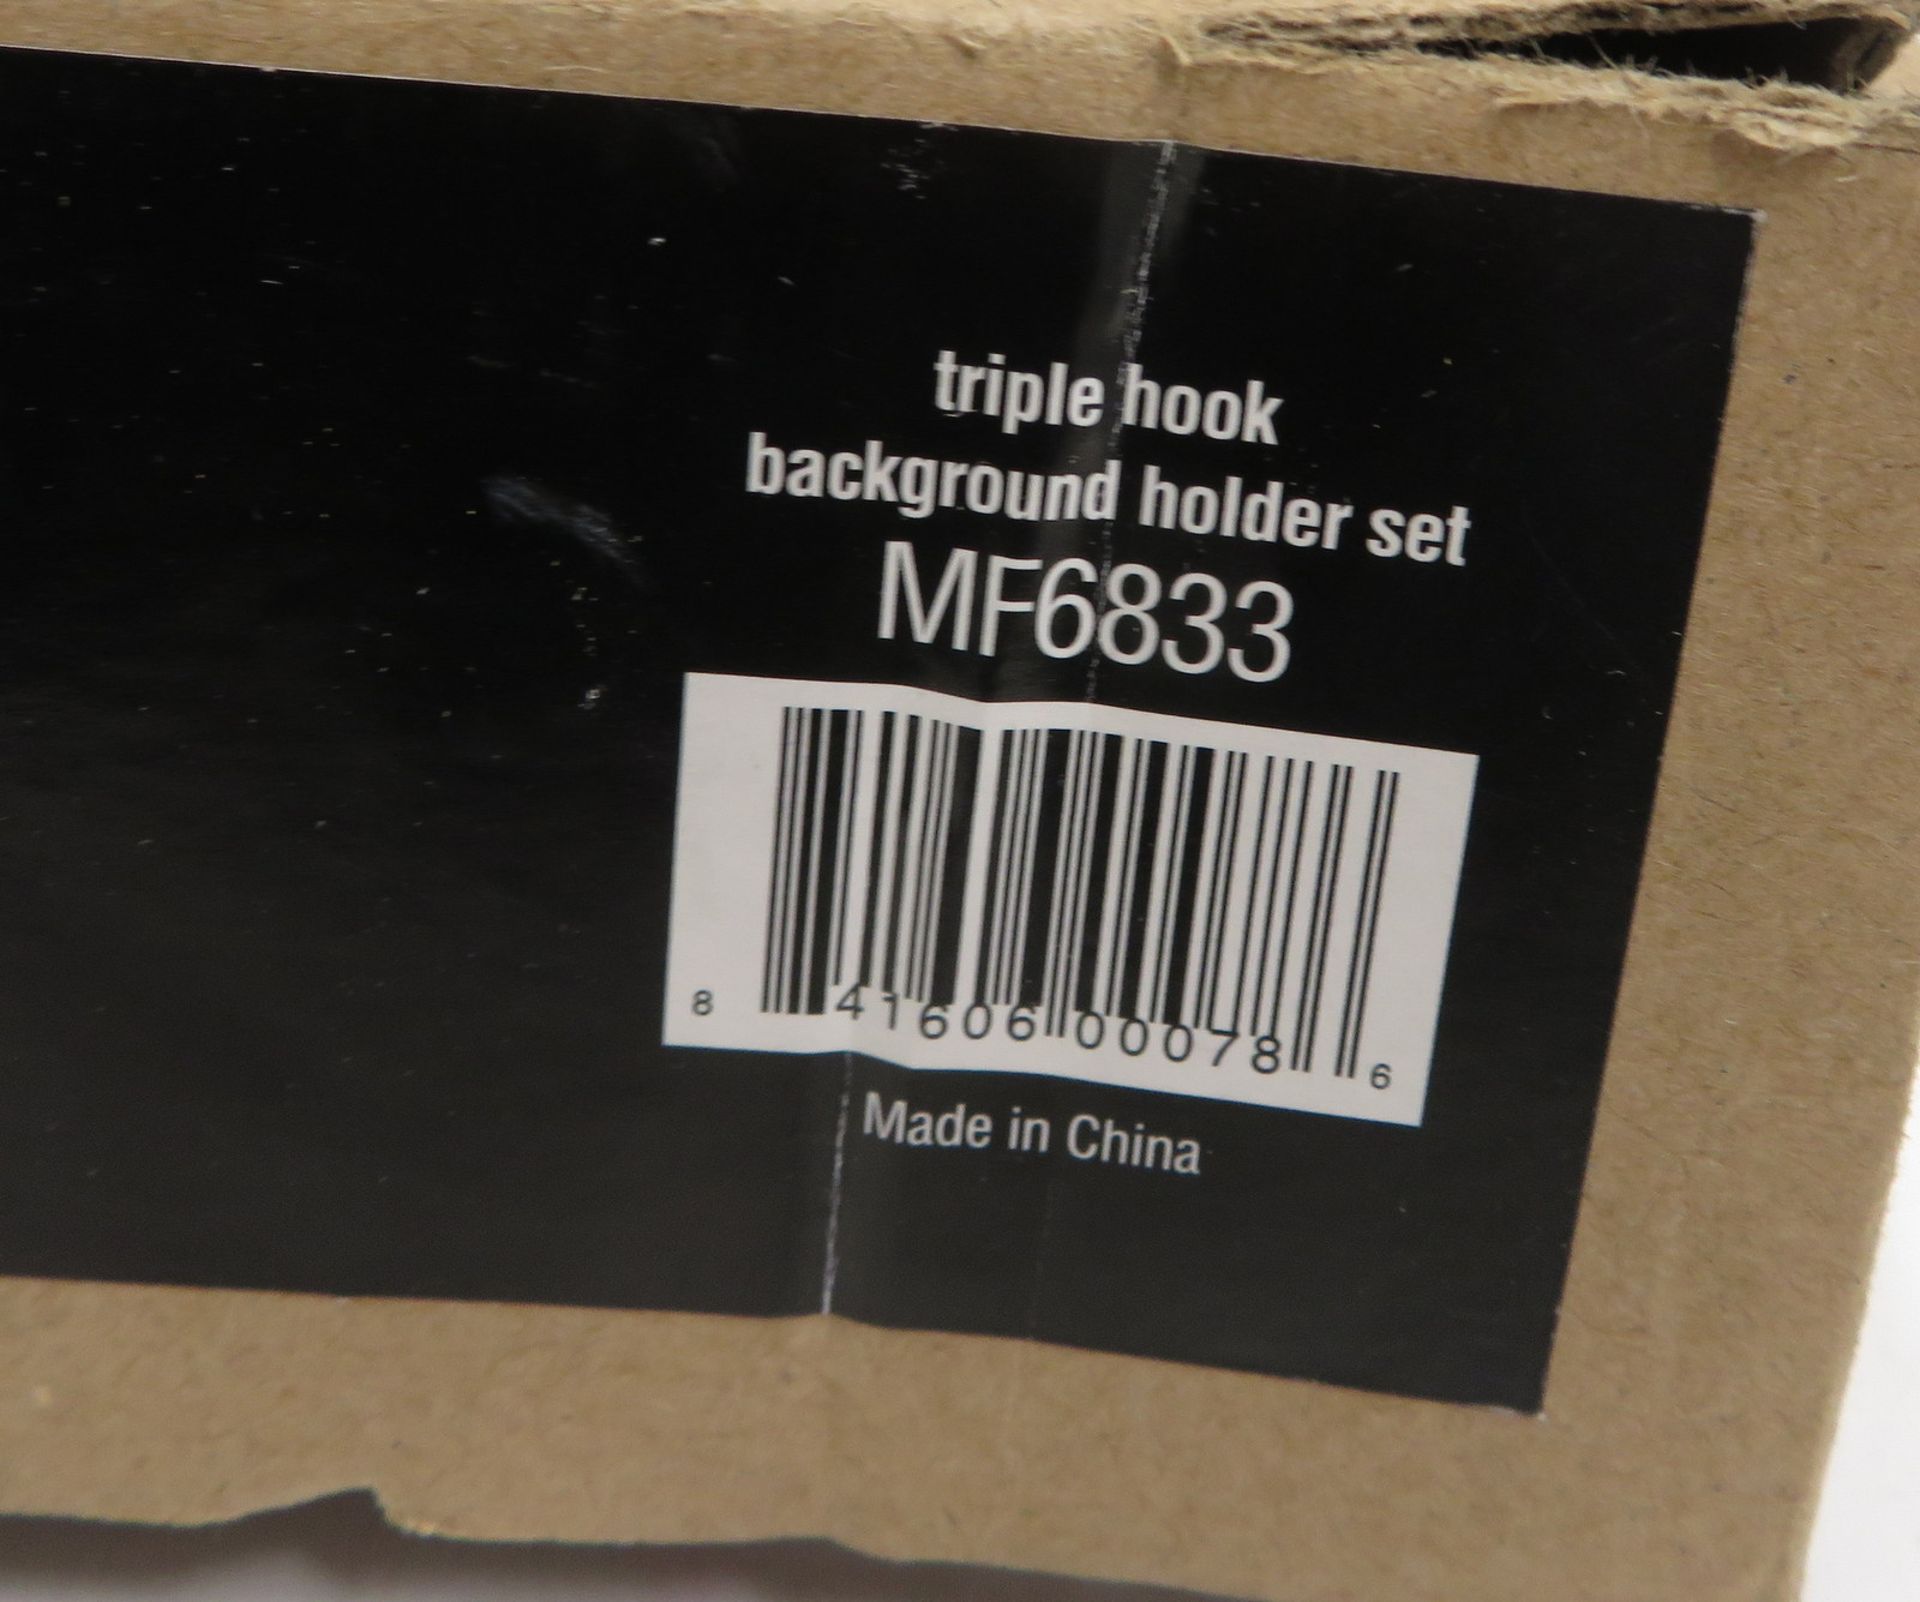 Calumet triple hook background holder set, unused in box - Image 5 of 5